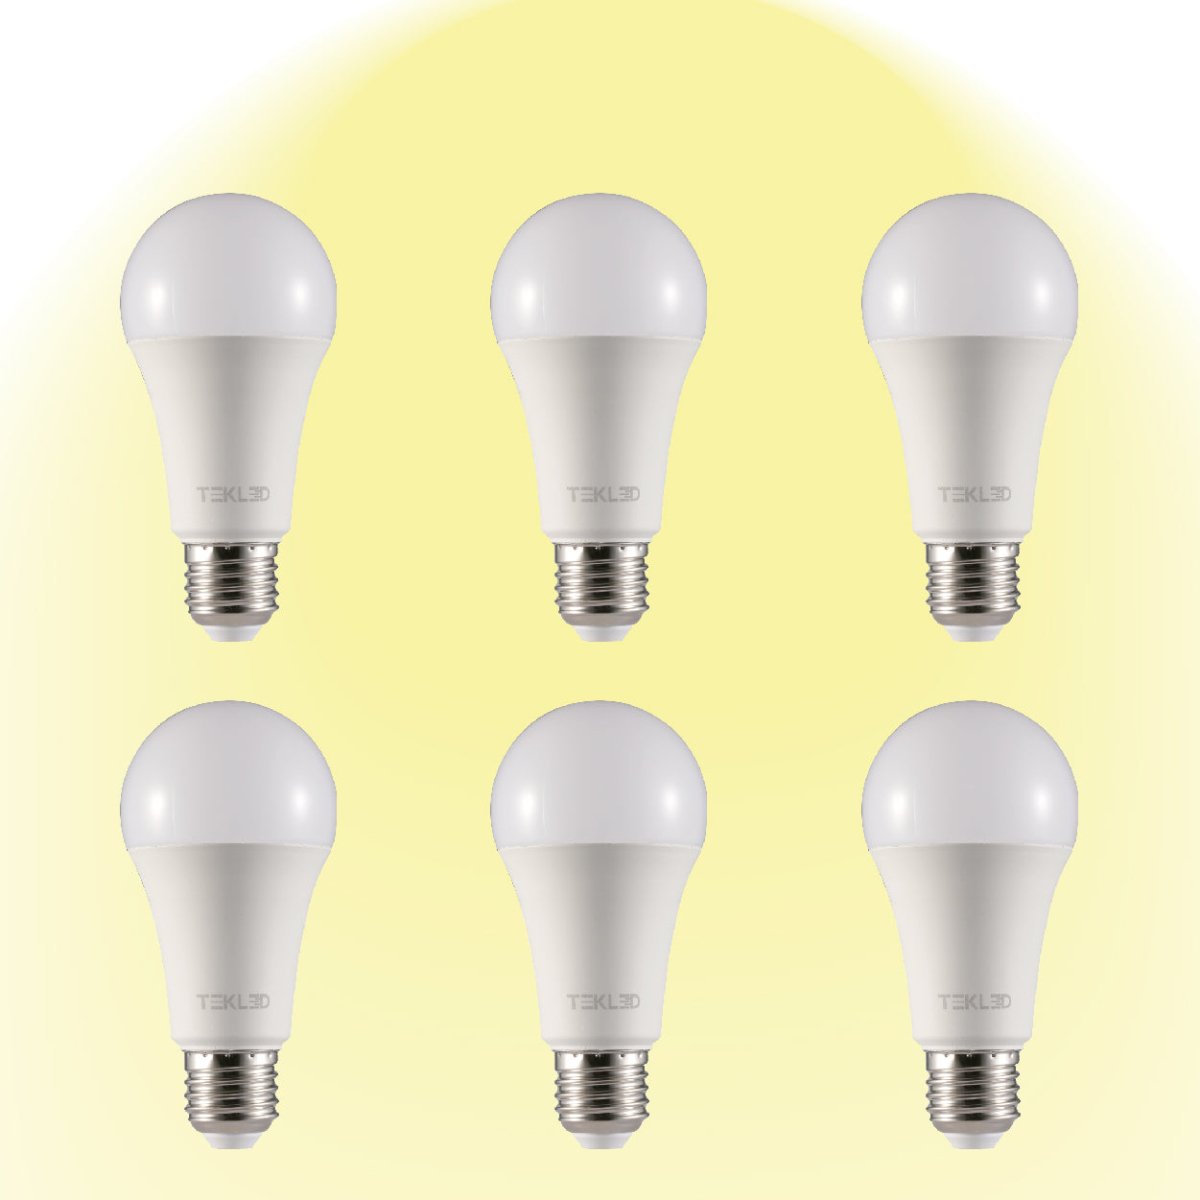 Virgo LED GLS Bulb A60 E27 Edison Screw 2700K Warm White 15 W Pack of 6 527-15688